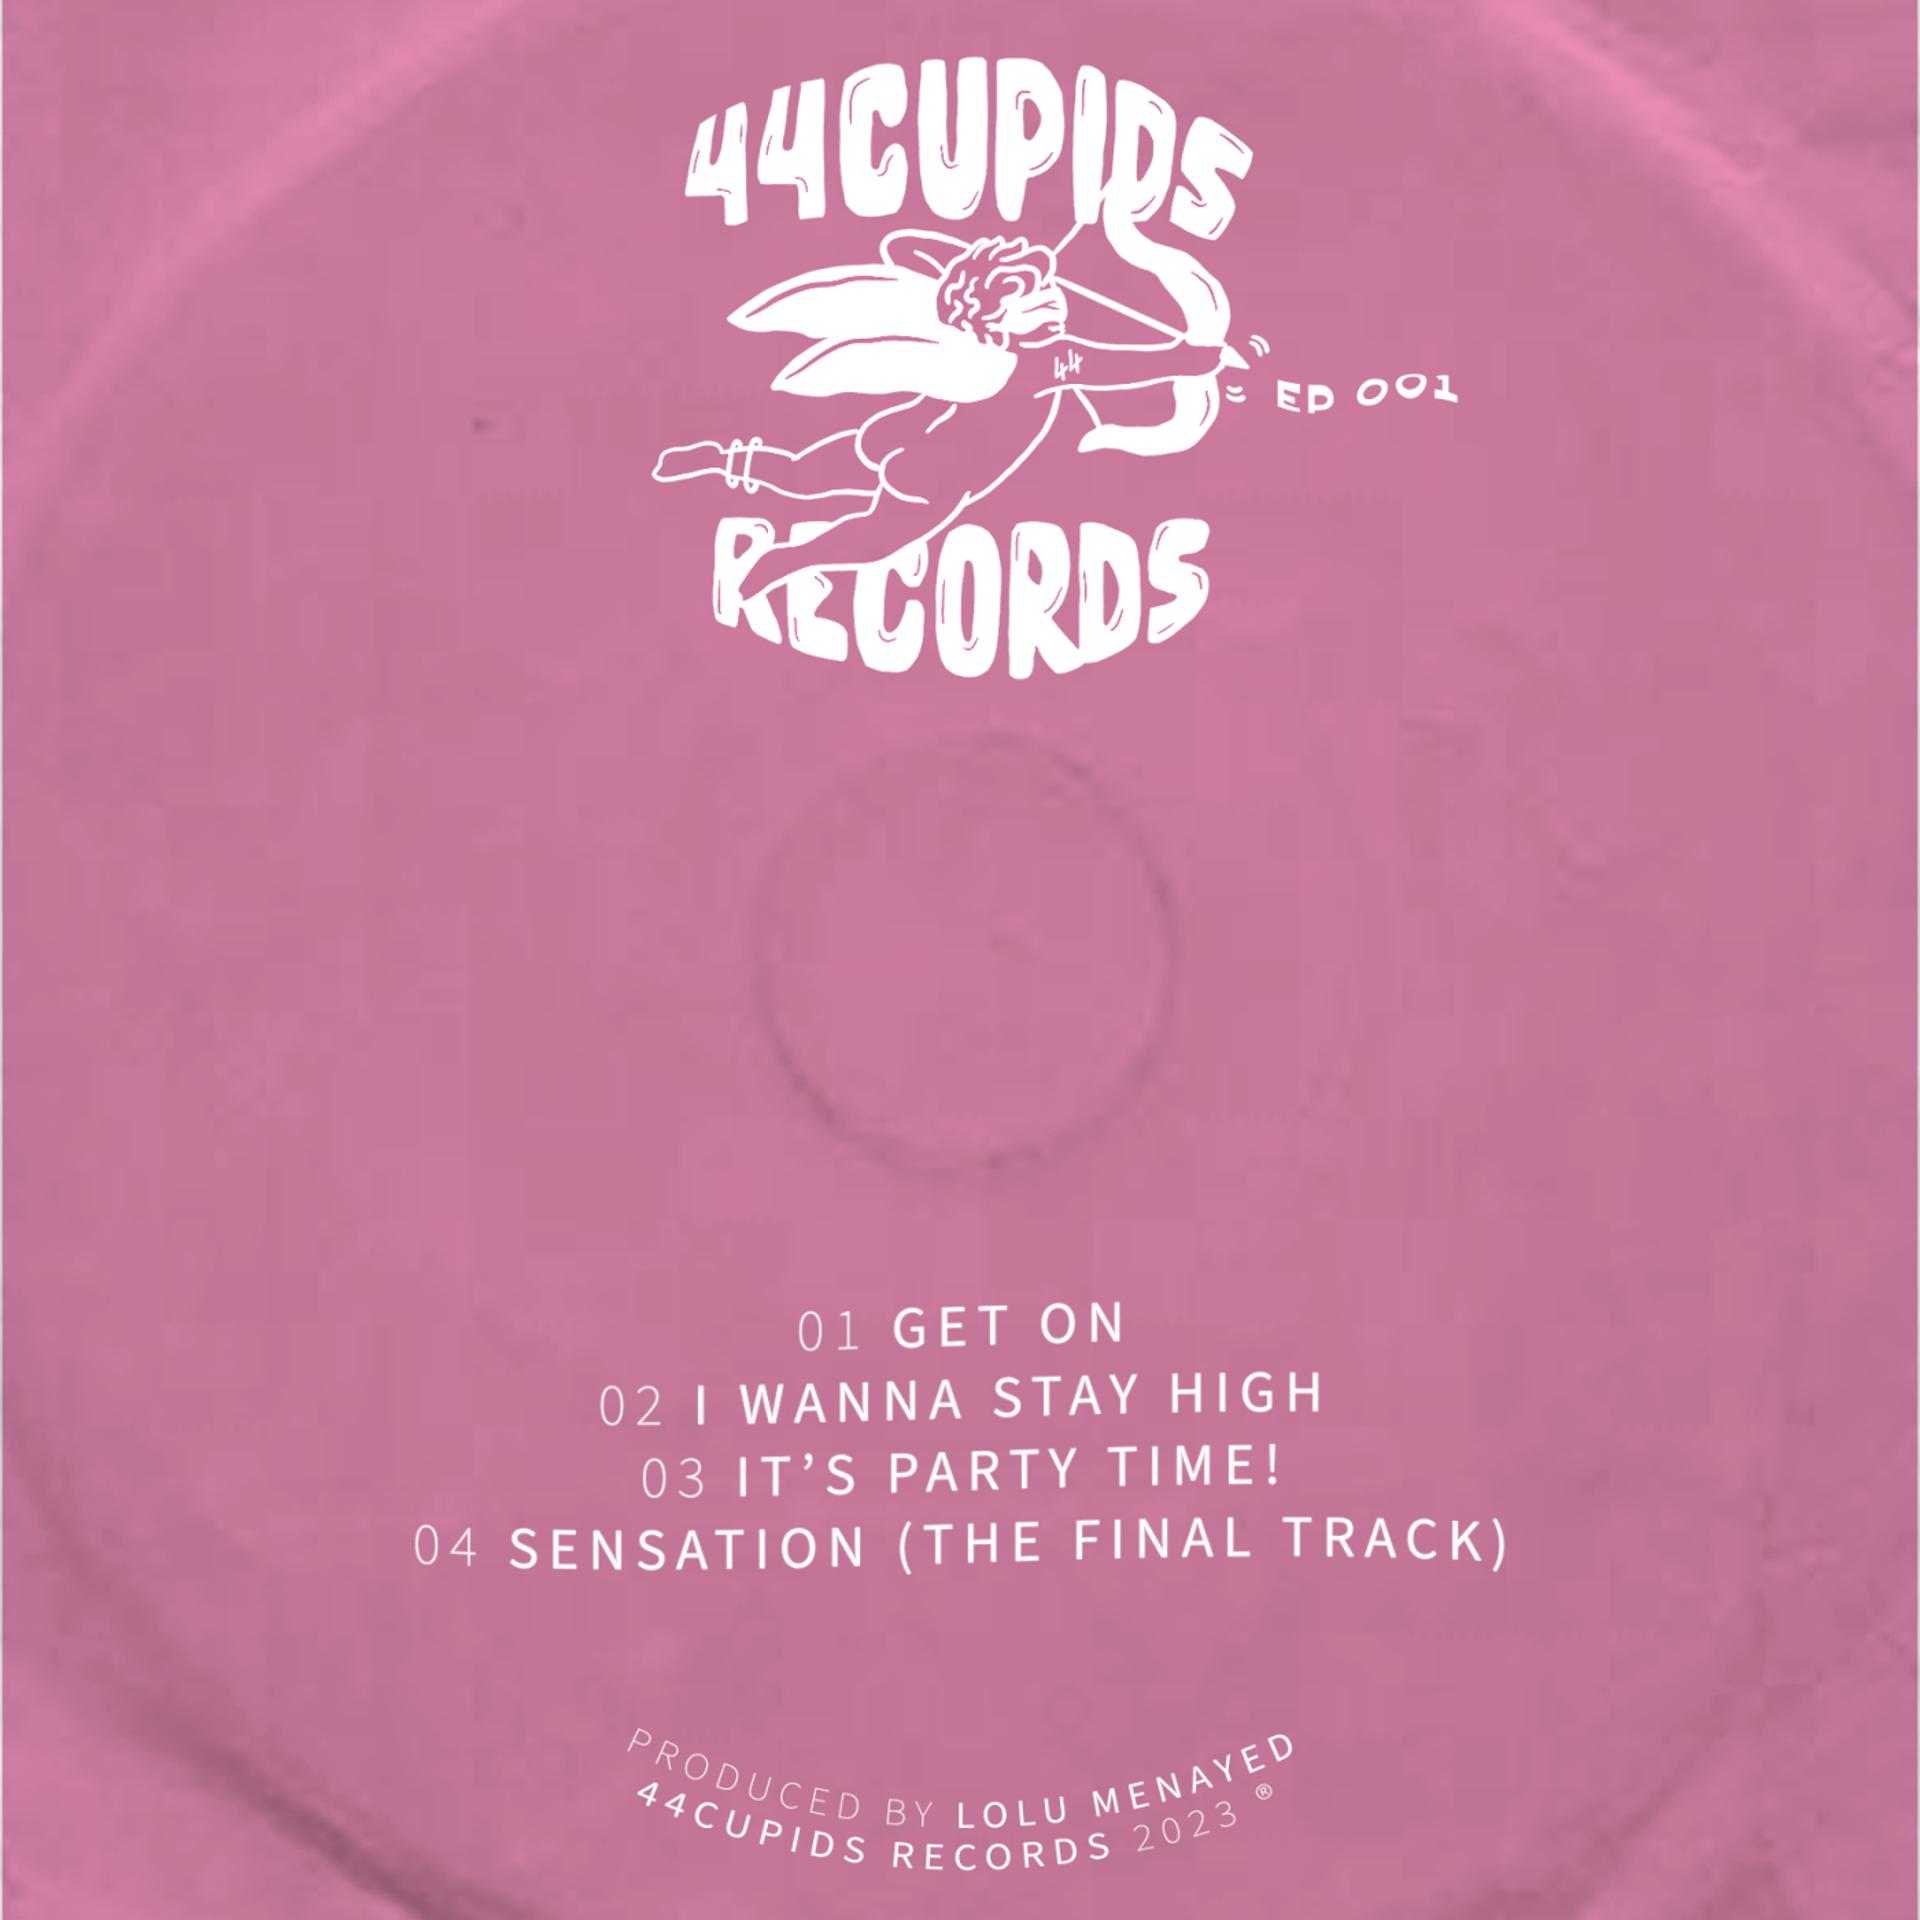 Постер альбома 44CUPIDS RECORDS EP 001